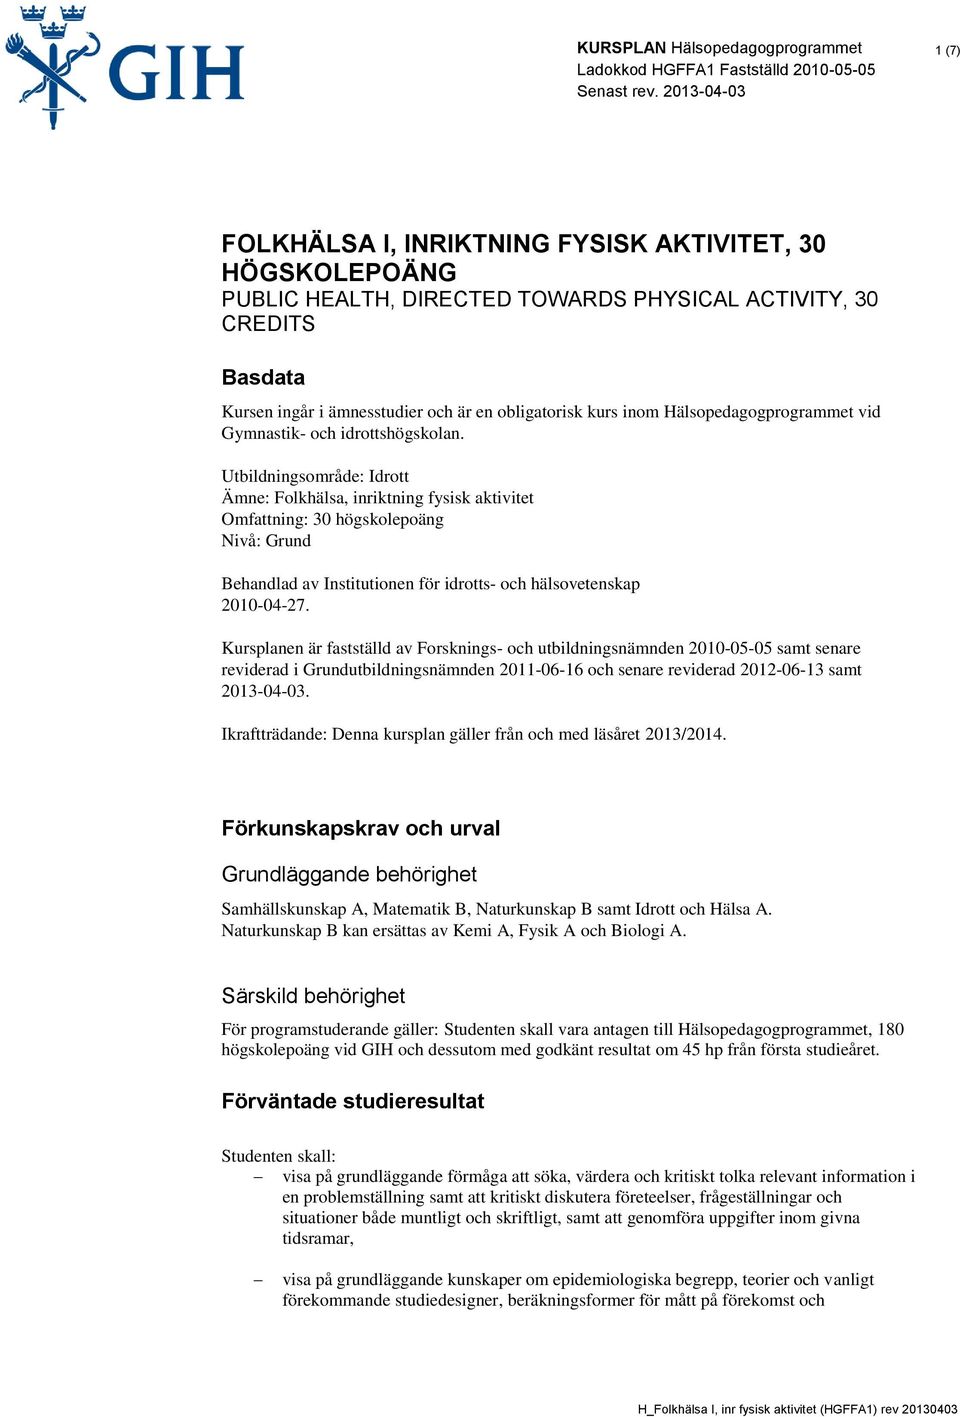 Utbildningsområde: Idrott Ämne: Folkhälsa, inriktning fysisk aktivitet Omfattning: 30 högskolepoäng Nivå: Grund Behandlad av Institutionen för idrotts- och hälsovetenskap 2010-04-27.